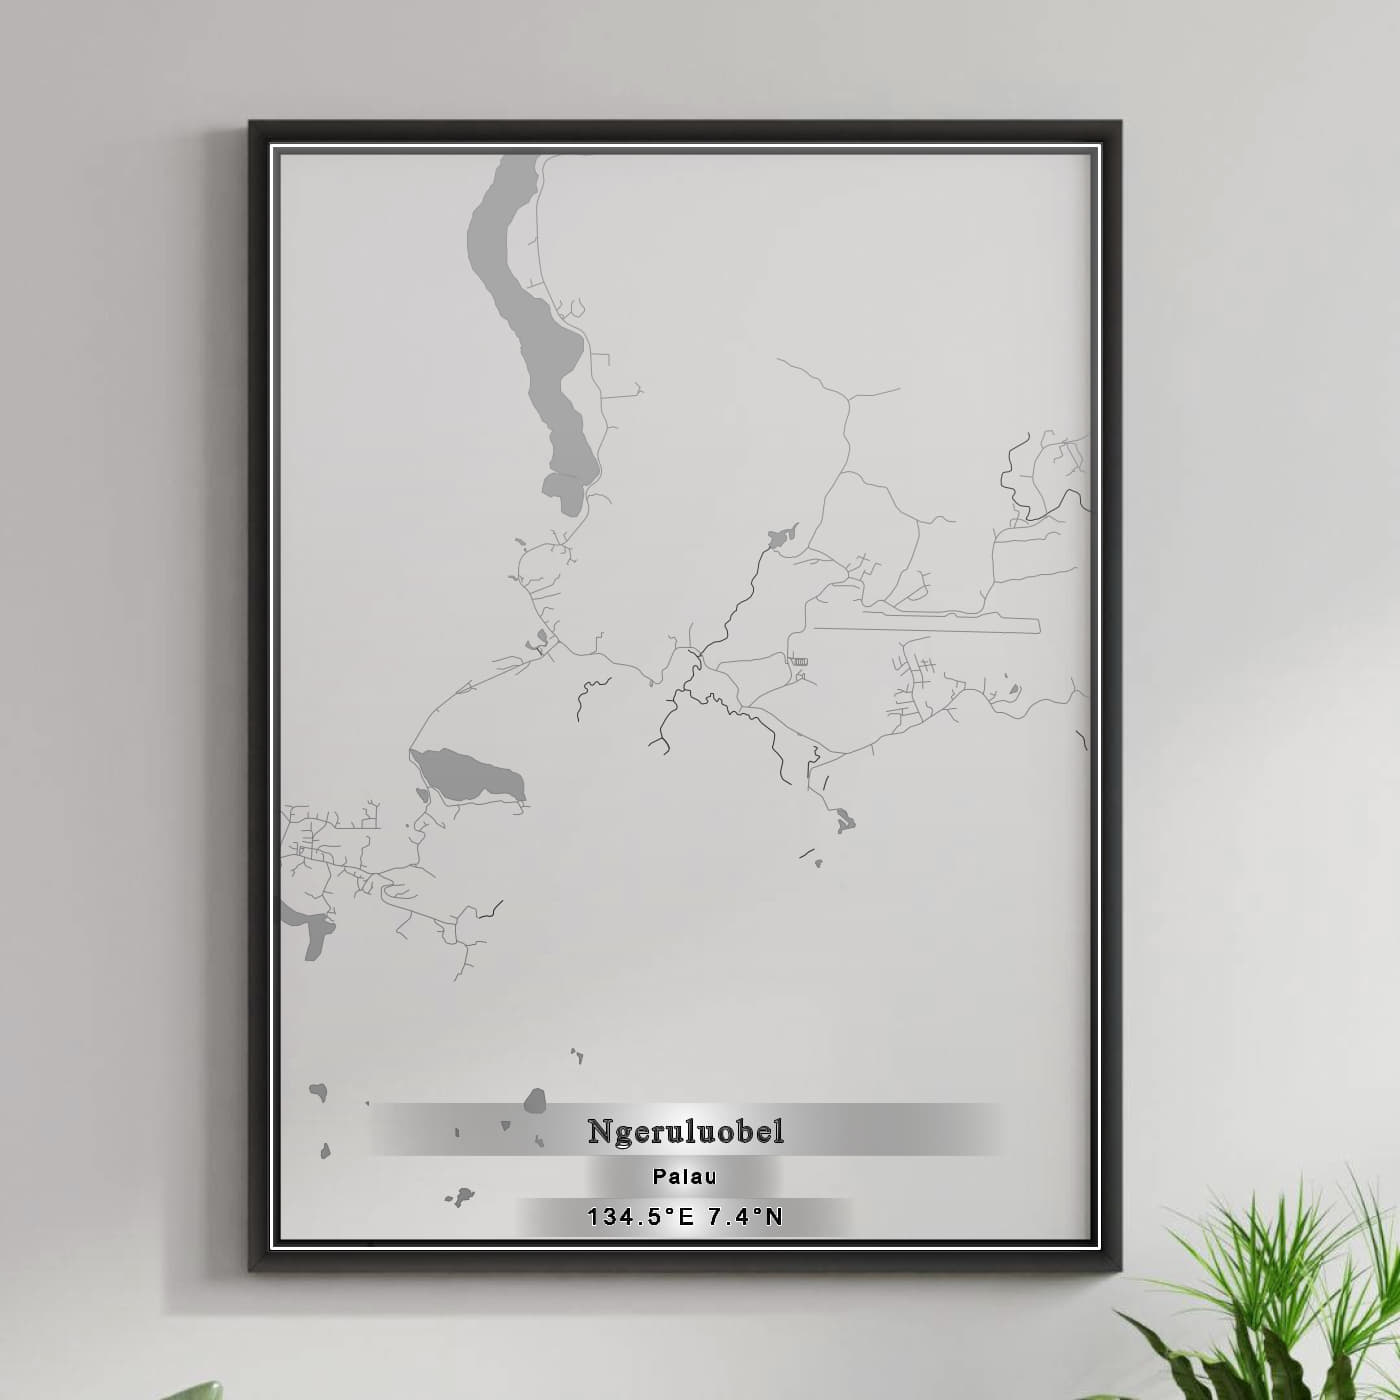 ROAD MAP OF NGERULUOBEL, PALAU BY MAPBAKES